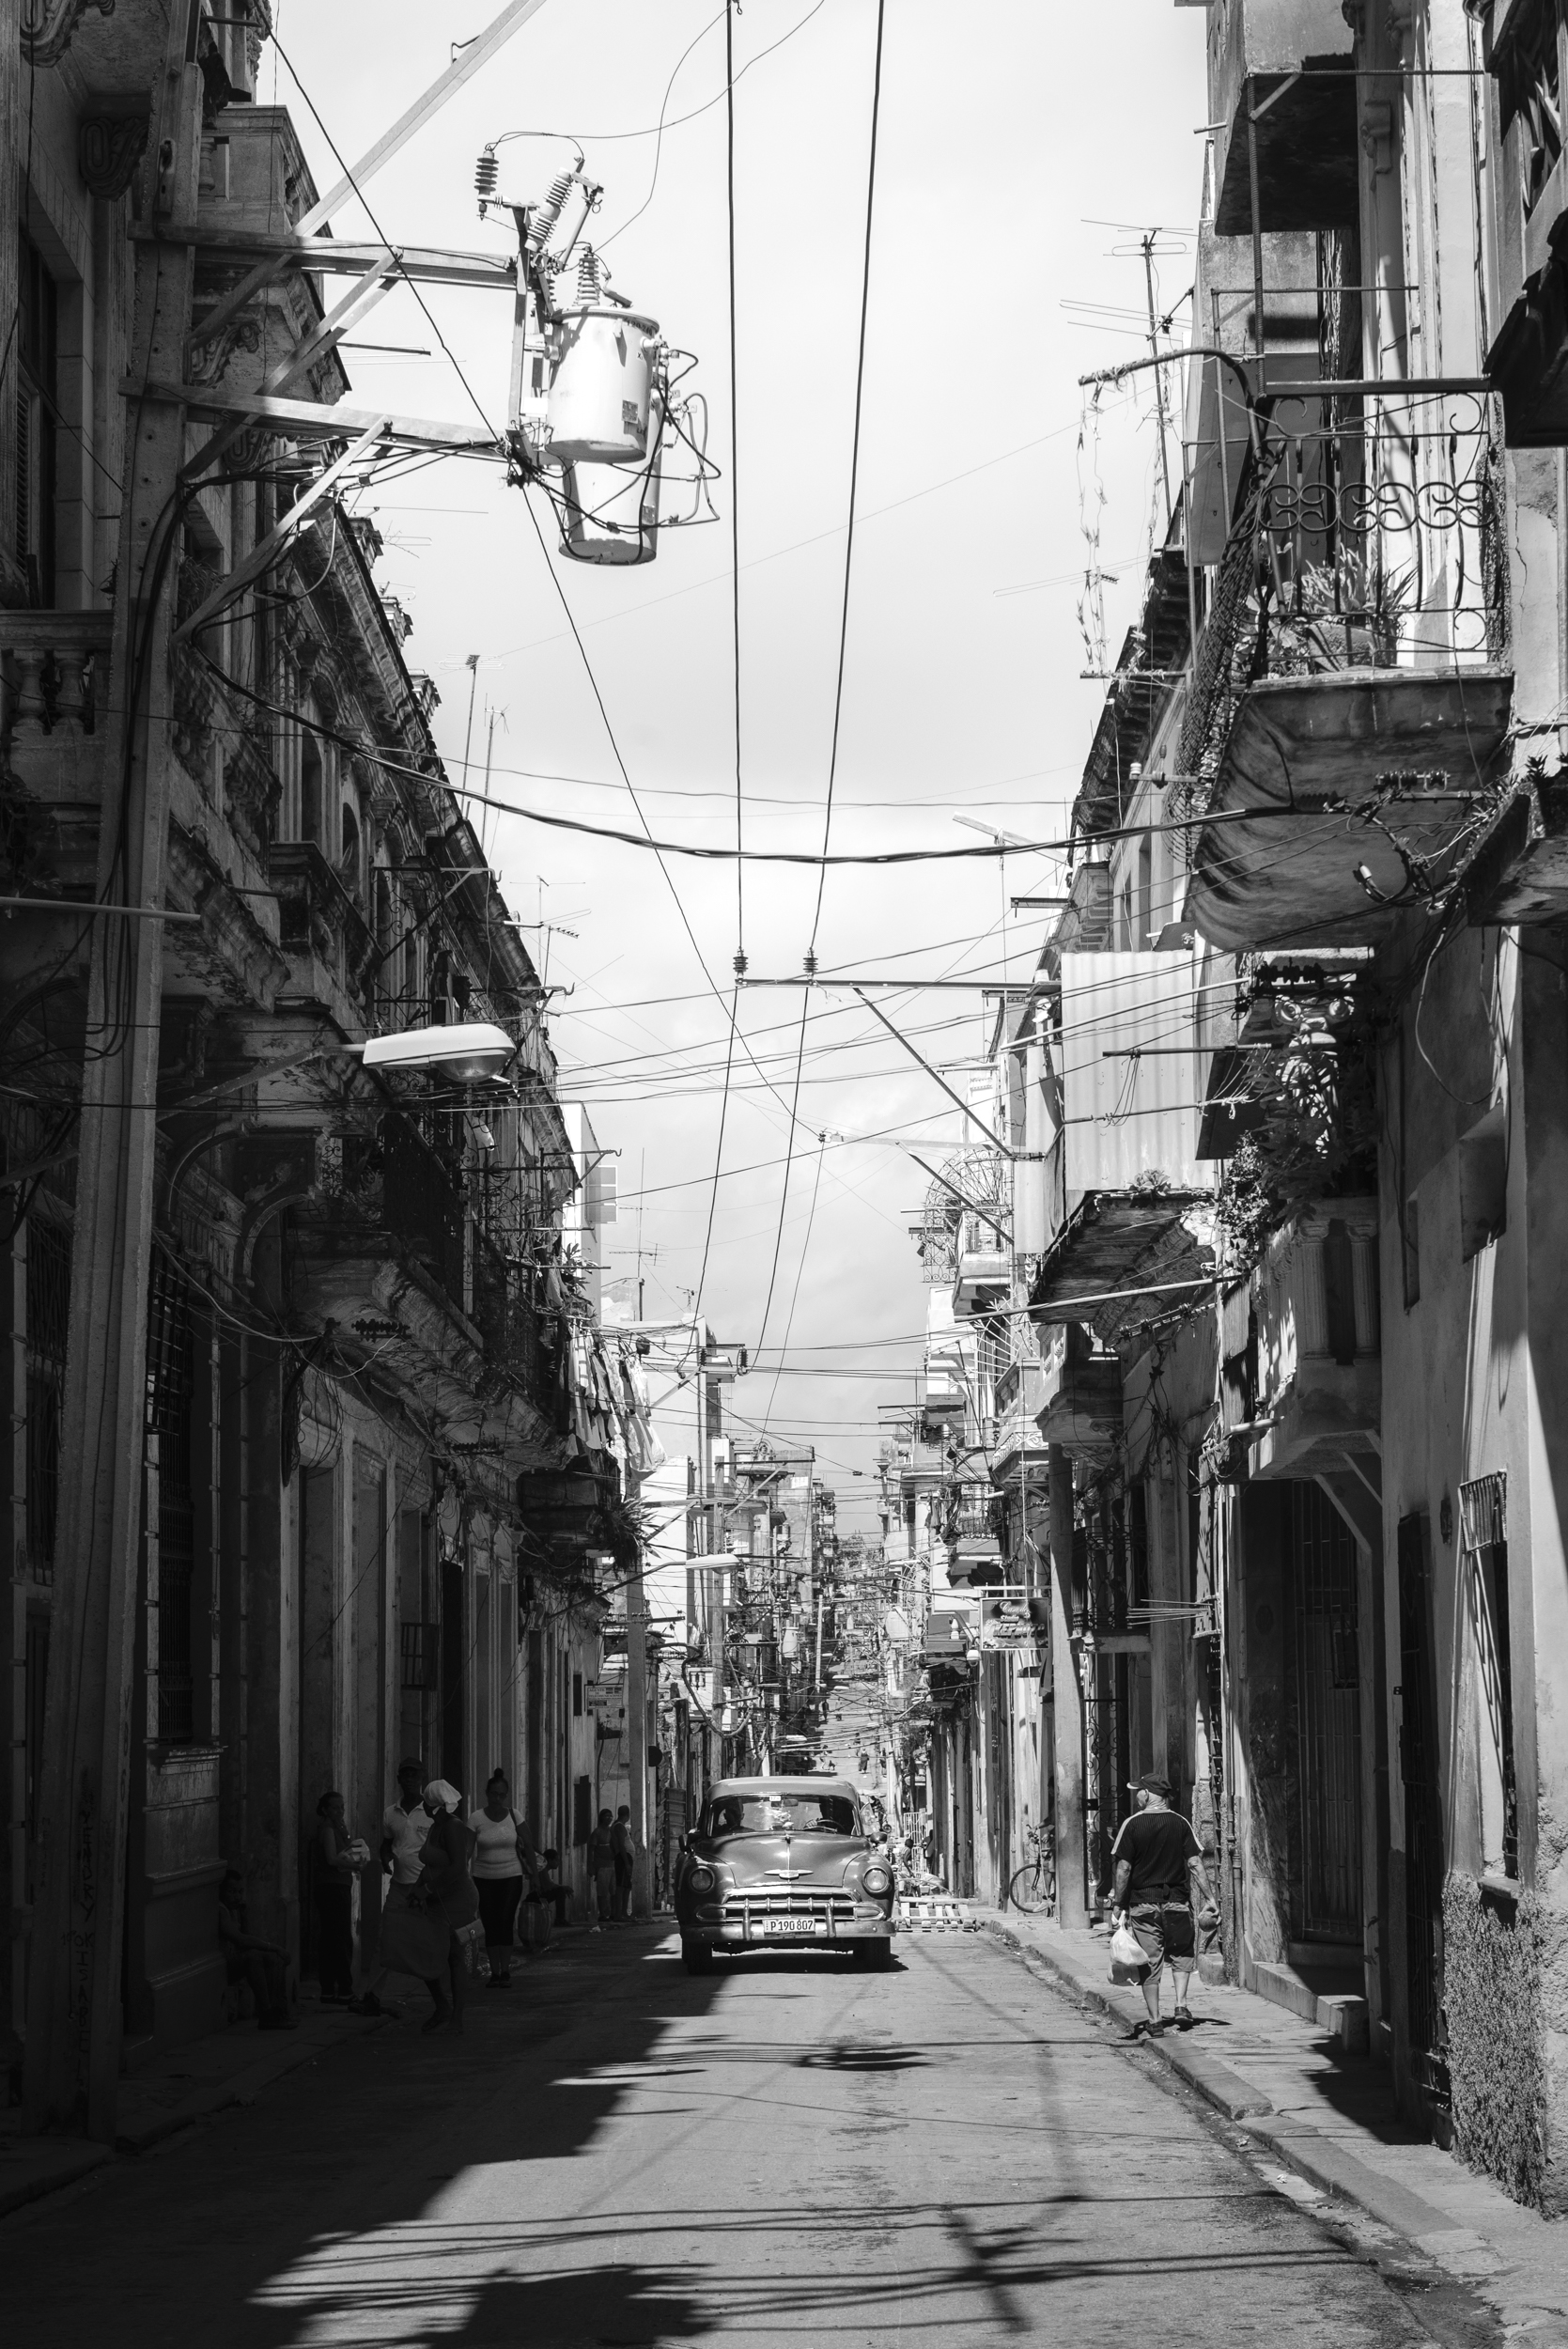 Habana Vieja, archival photo by Mark Eden